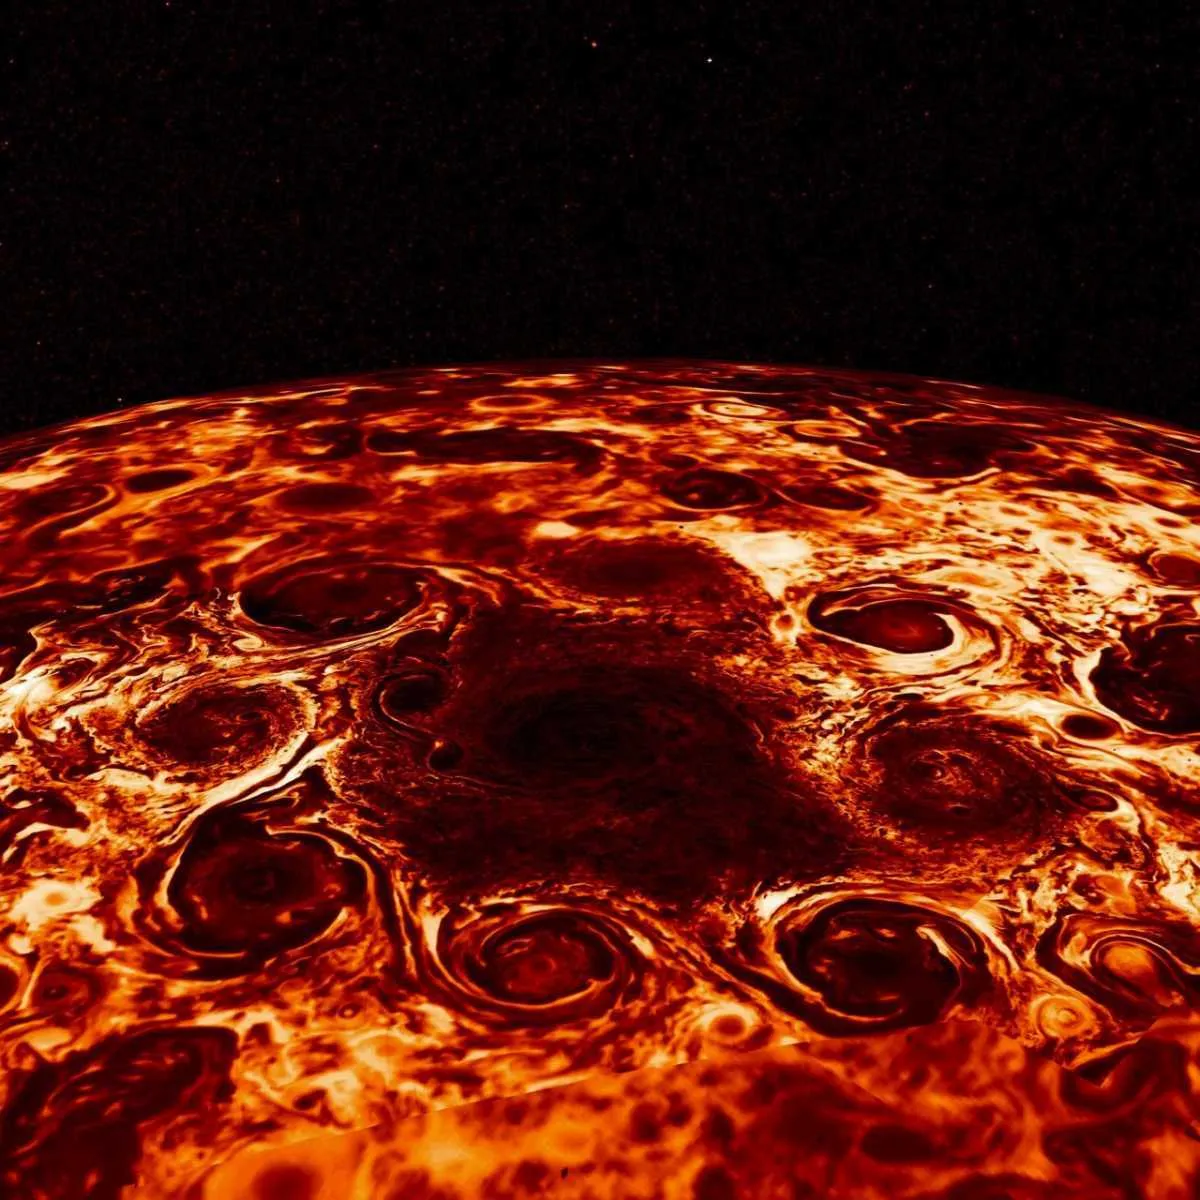 Cyclones at Jupiter's north pole © NASA/JPL-Caltech/SwRI/ASI/INAF/JIRAM